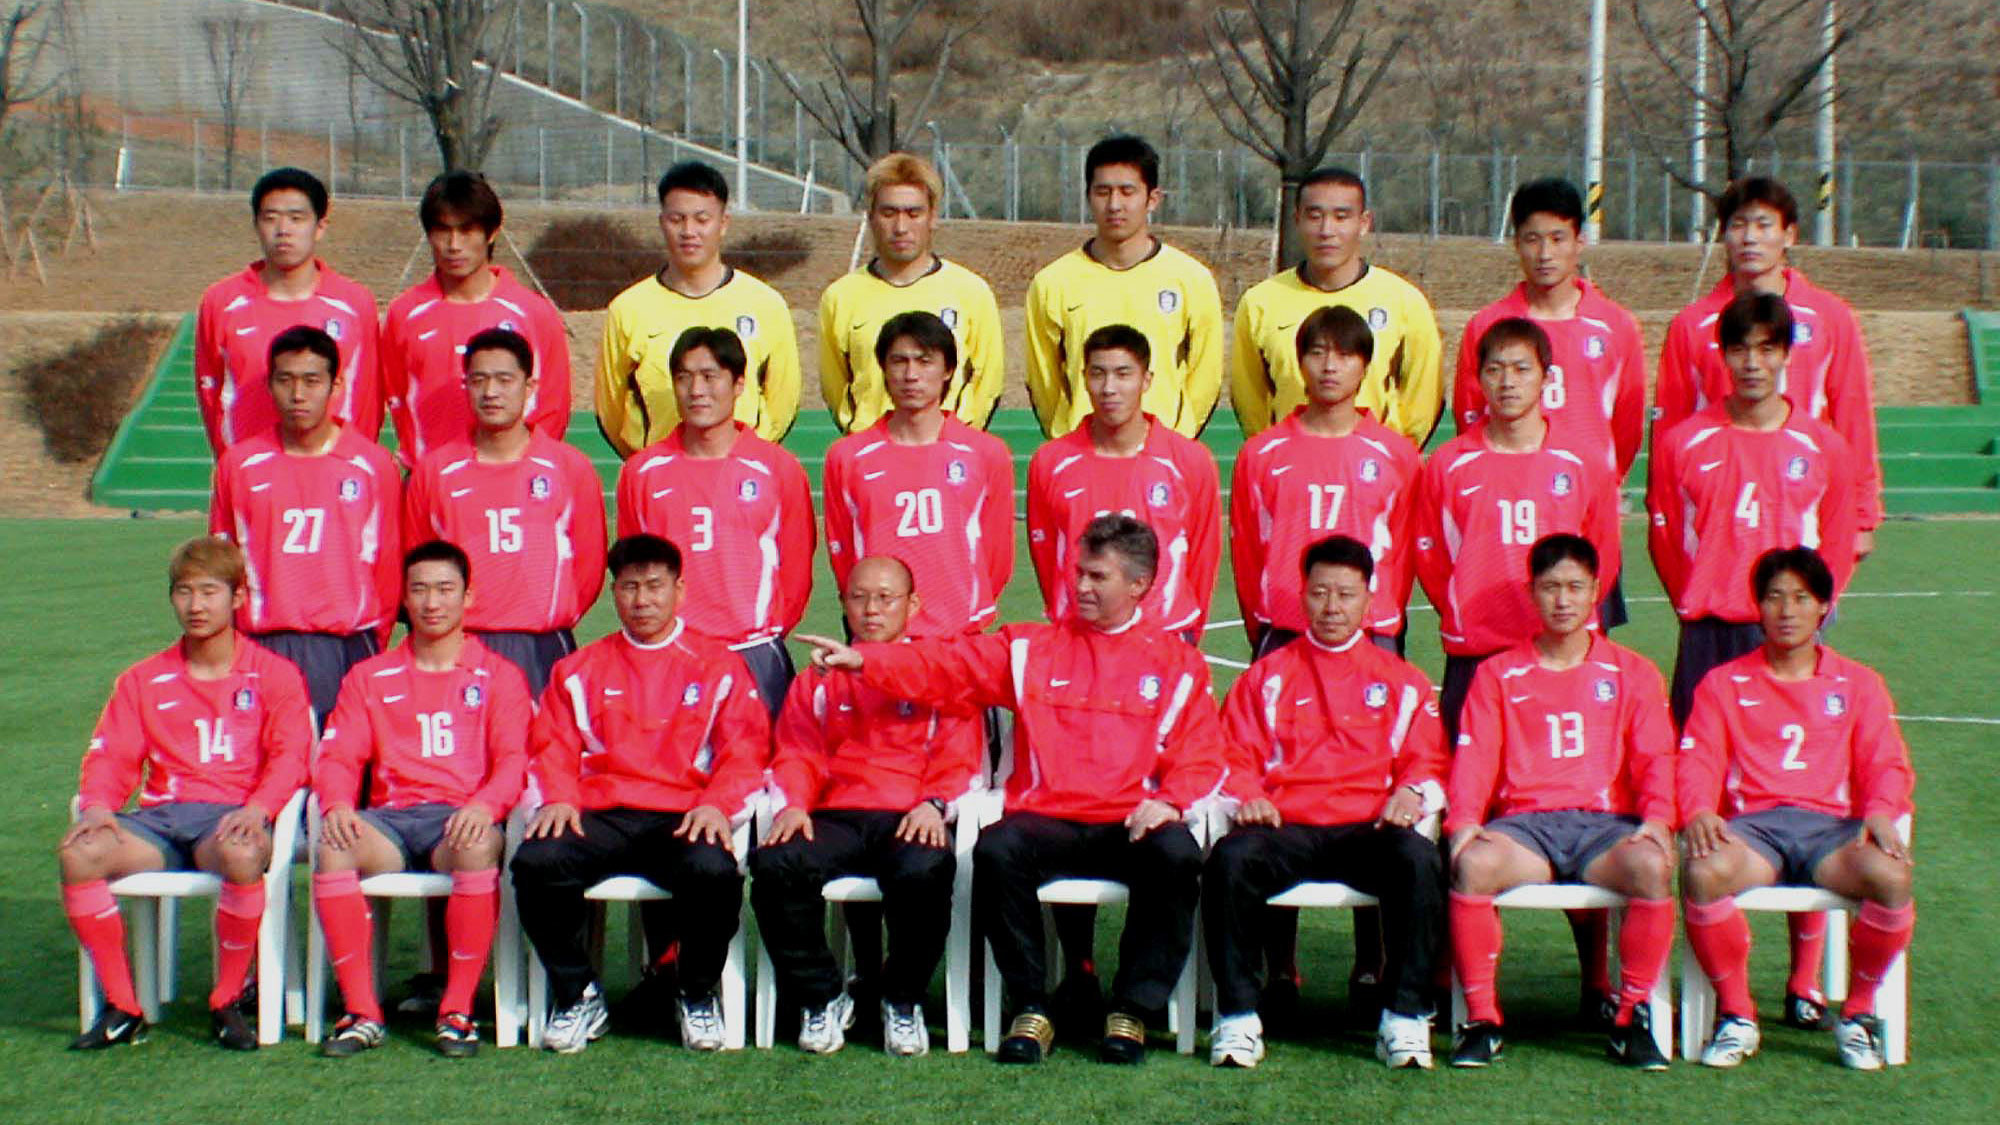 Главный тренер южнокорейской национальной футбольной команды Гус Хиддинк, четвёртый справа на линии фронта, и его игроки позируют фотографам в новой униформе на церемонии открытия чемпионата мира по футболу 2002 года в Корее/Японии в тренировочном центре в Паджу к северу от Сеула, 4 марта 2002 года. Фото: © AP Photo/Yun Jai-hyoung